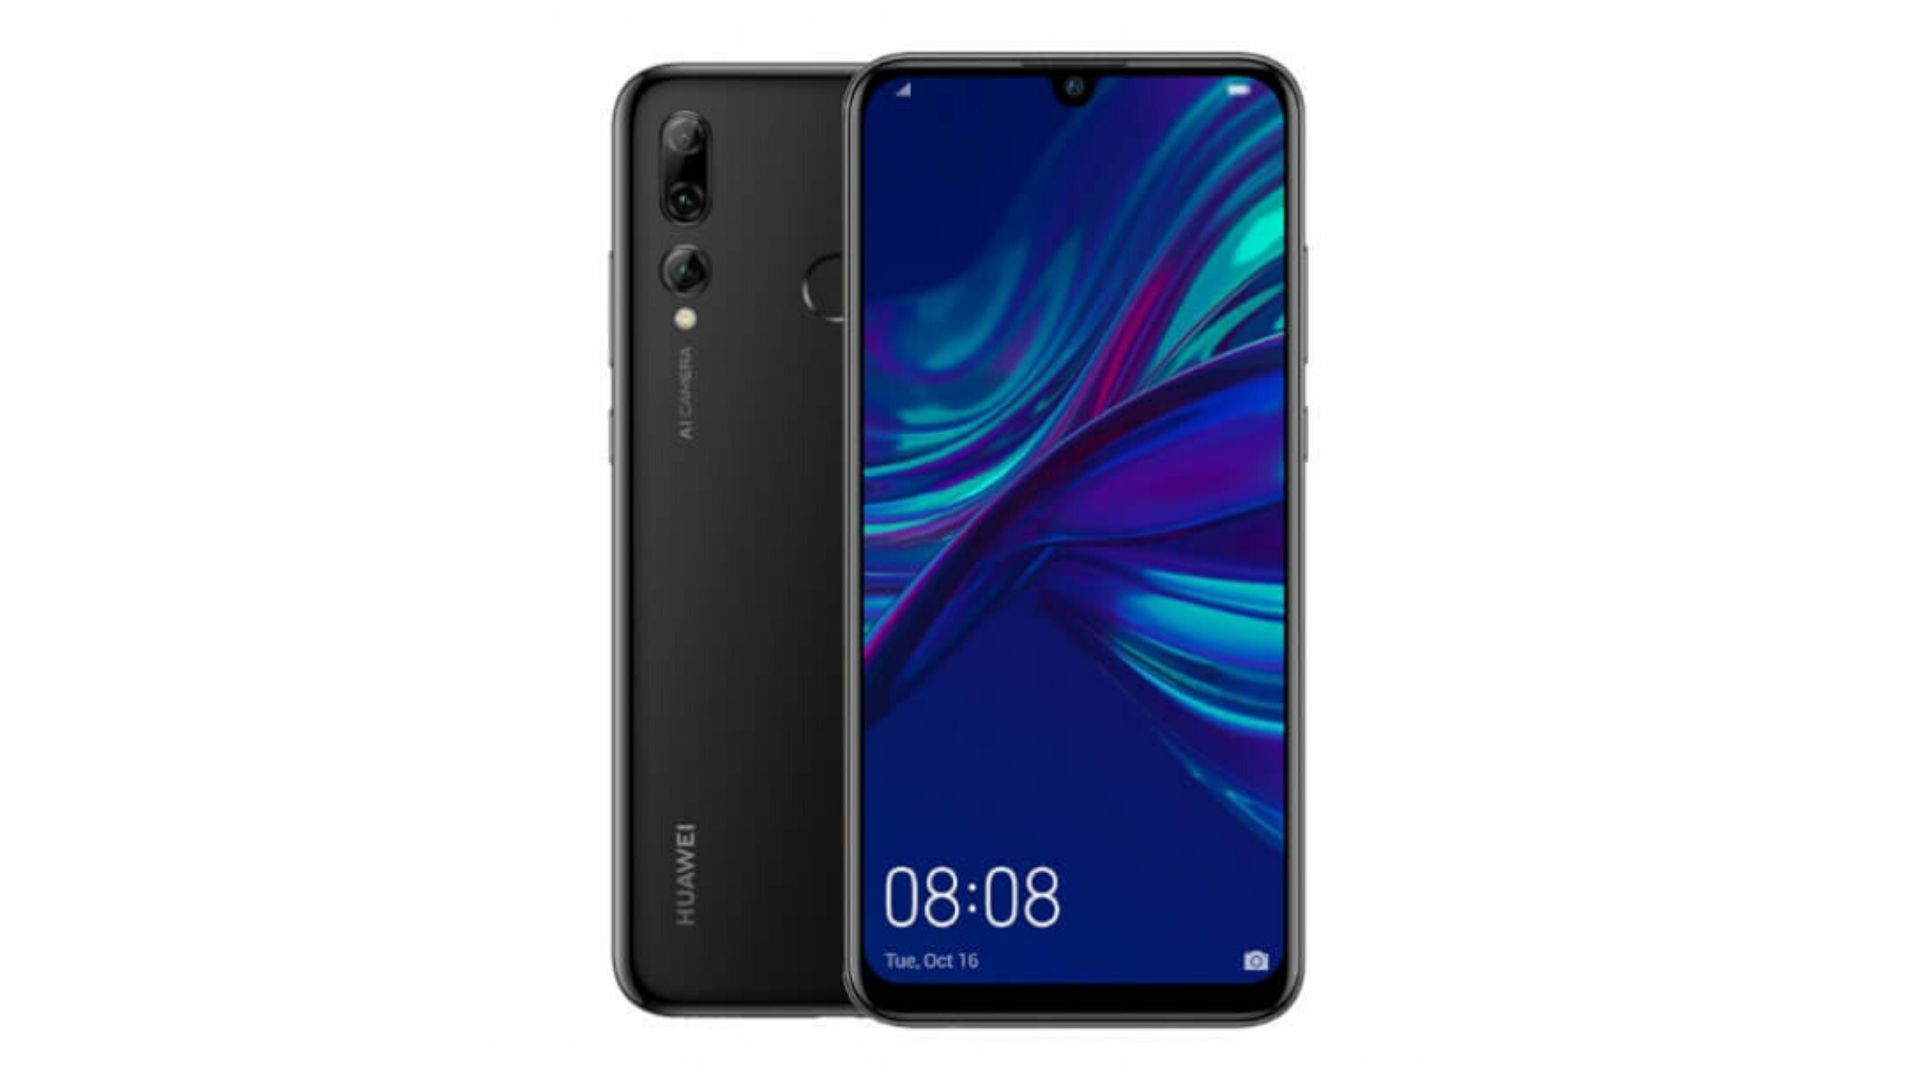 ¡Chollo! Huawei P Smart 2019 3GB/64GB por sólo 129€ desde España (PVP 169€)